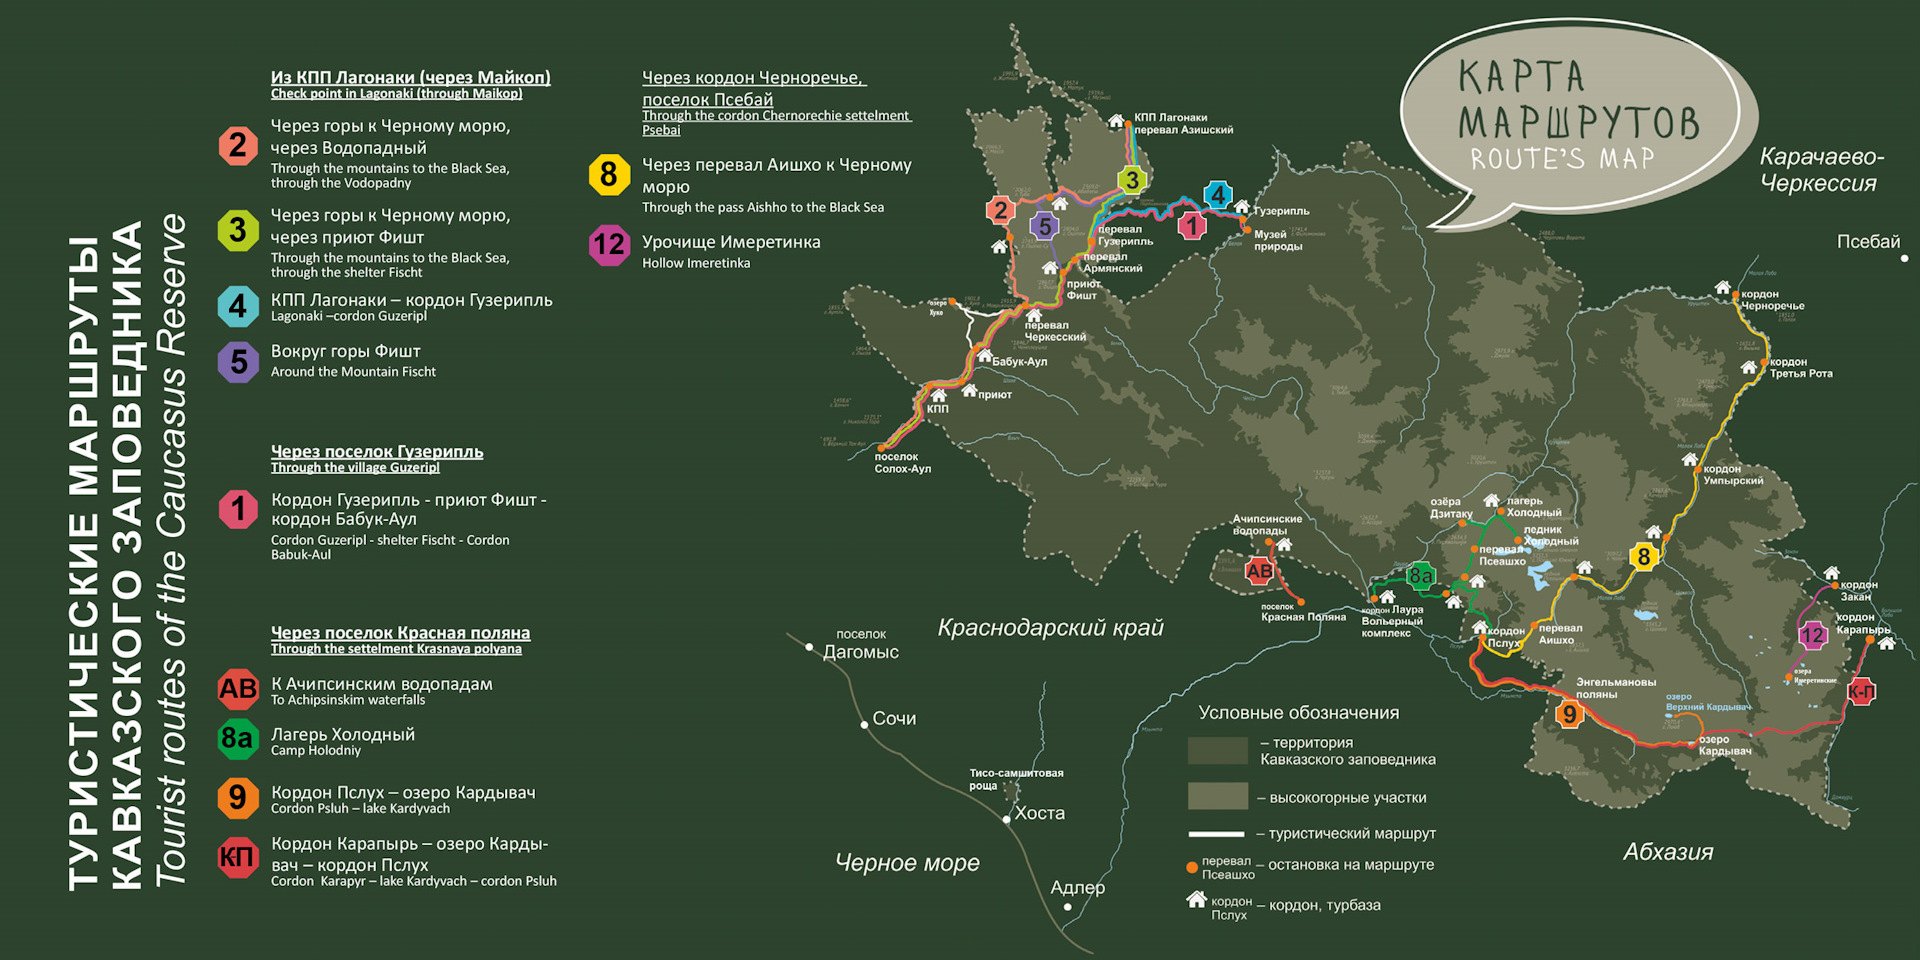 Карта туристических маршрутов Кавказского биосферного заповедника